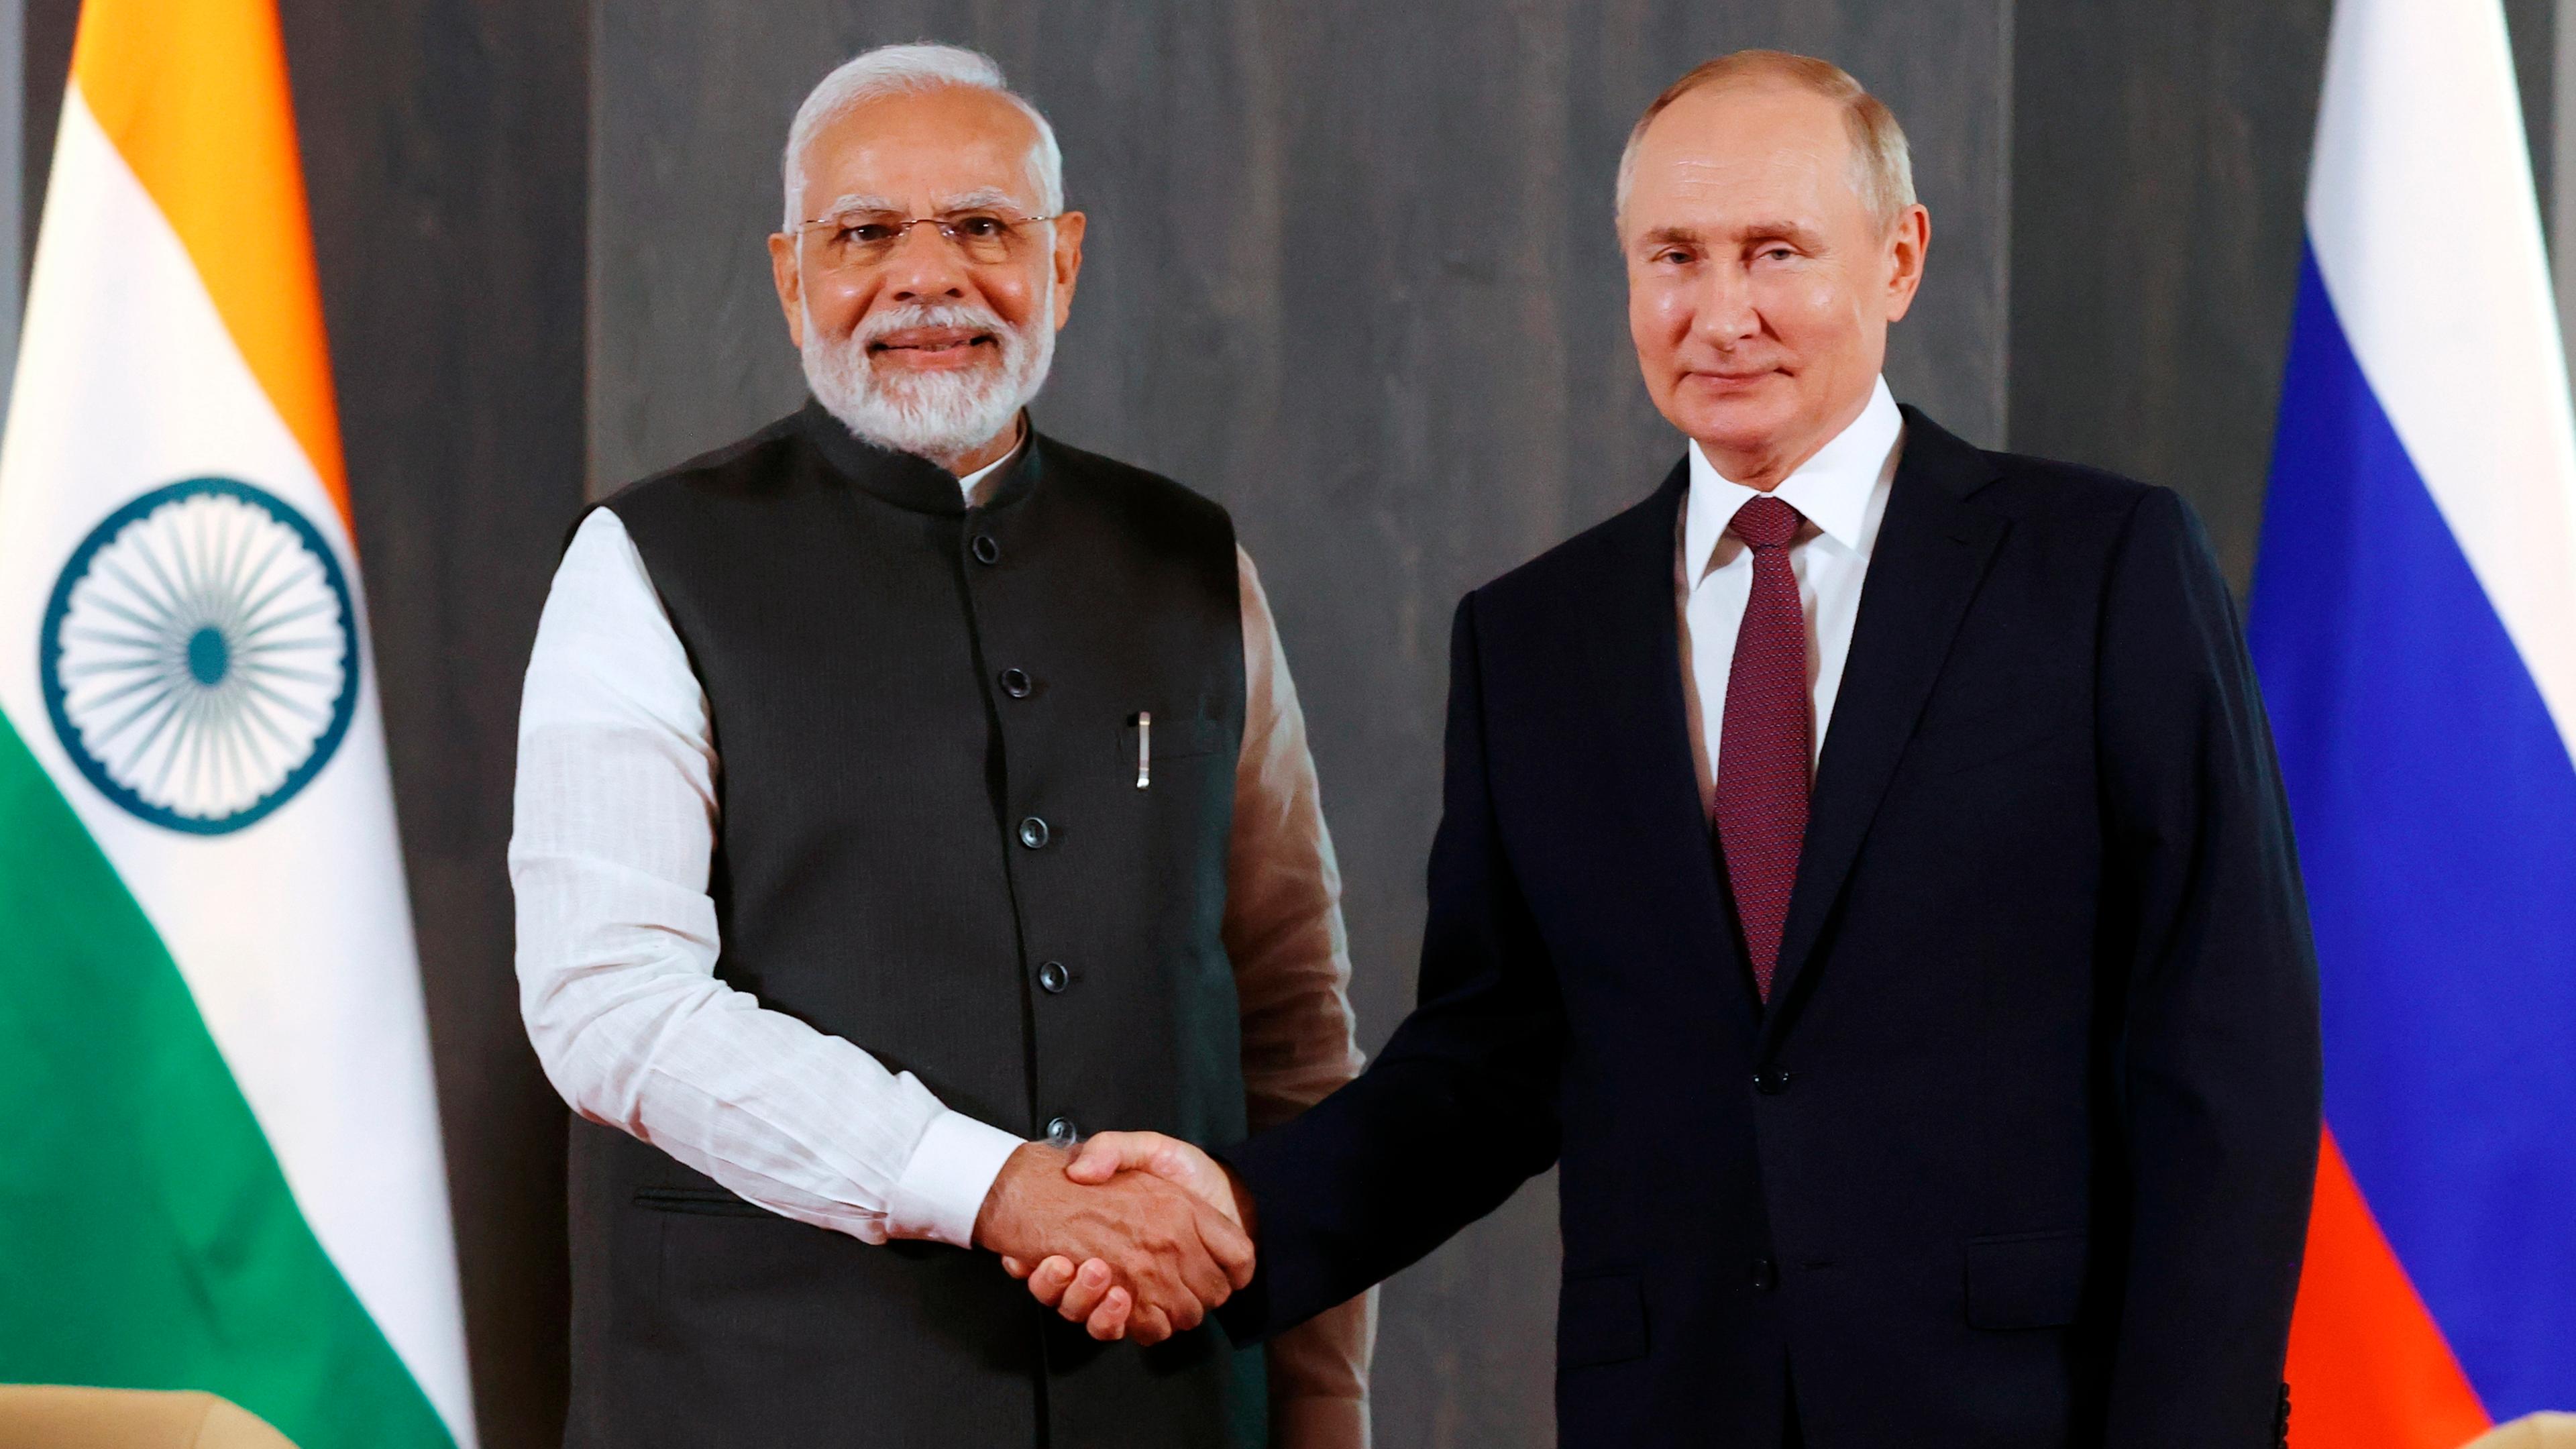 Der indische Premier Narendra Modi und der russische Präsident Wladimir Putin reichen sich die Hände.